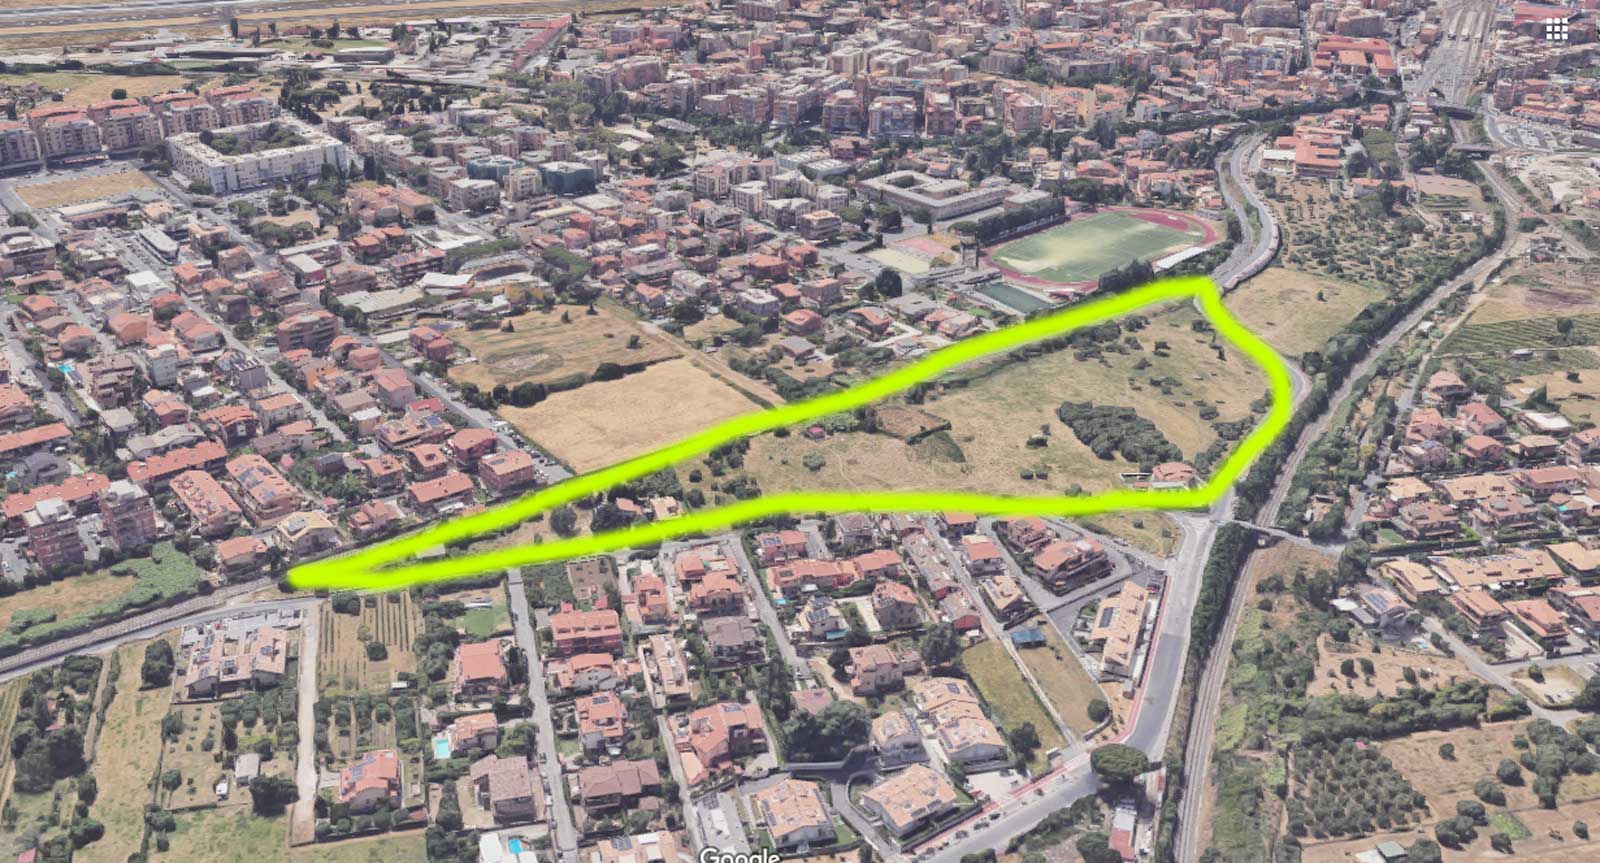 Ciampino, l'area oggetto della nuova mega-lottizzazione. Foto Google Maps elaborata con intelligenza artificiale